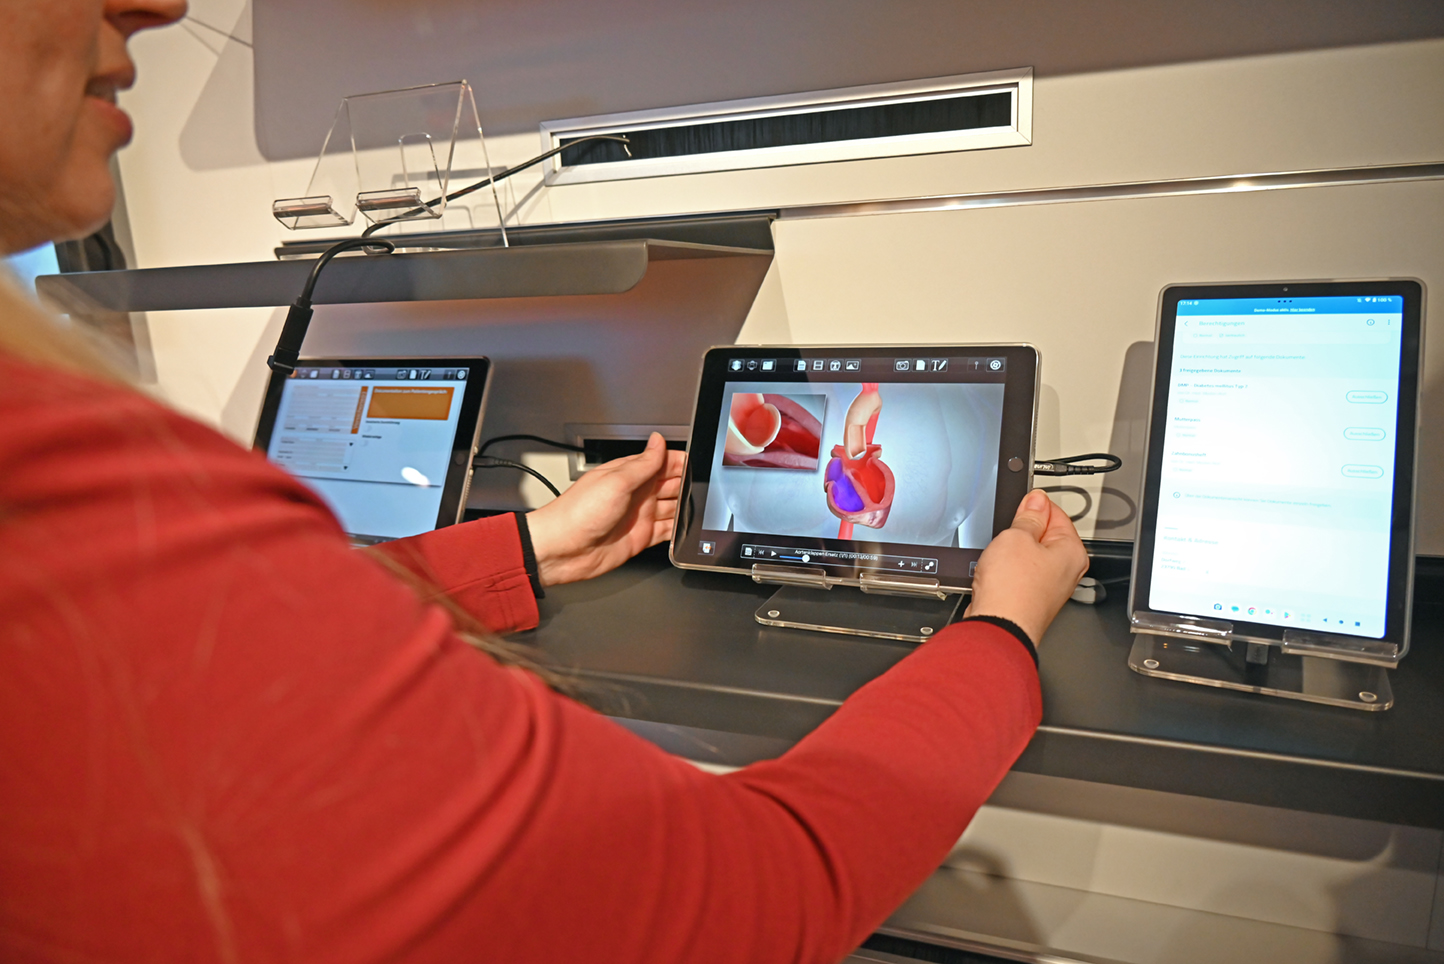 Eine Frau im rotem Pullover erklärt in der Showpraxis der KV Berlin die unterschiedliche Nutzung von digitalen Gesundheitsanwendungen am Beispiel einer Software zur Darstellung von Operationen oder Krankheitsbildern.